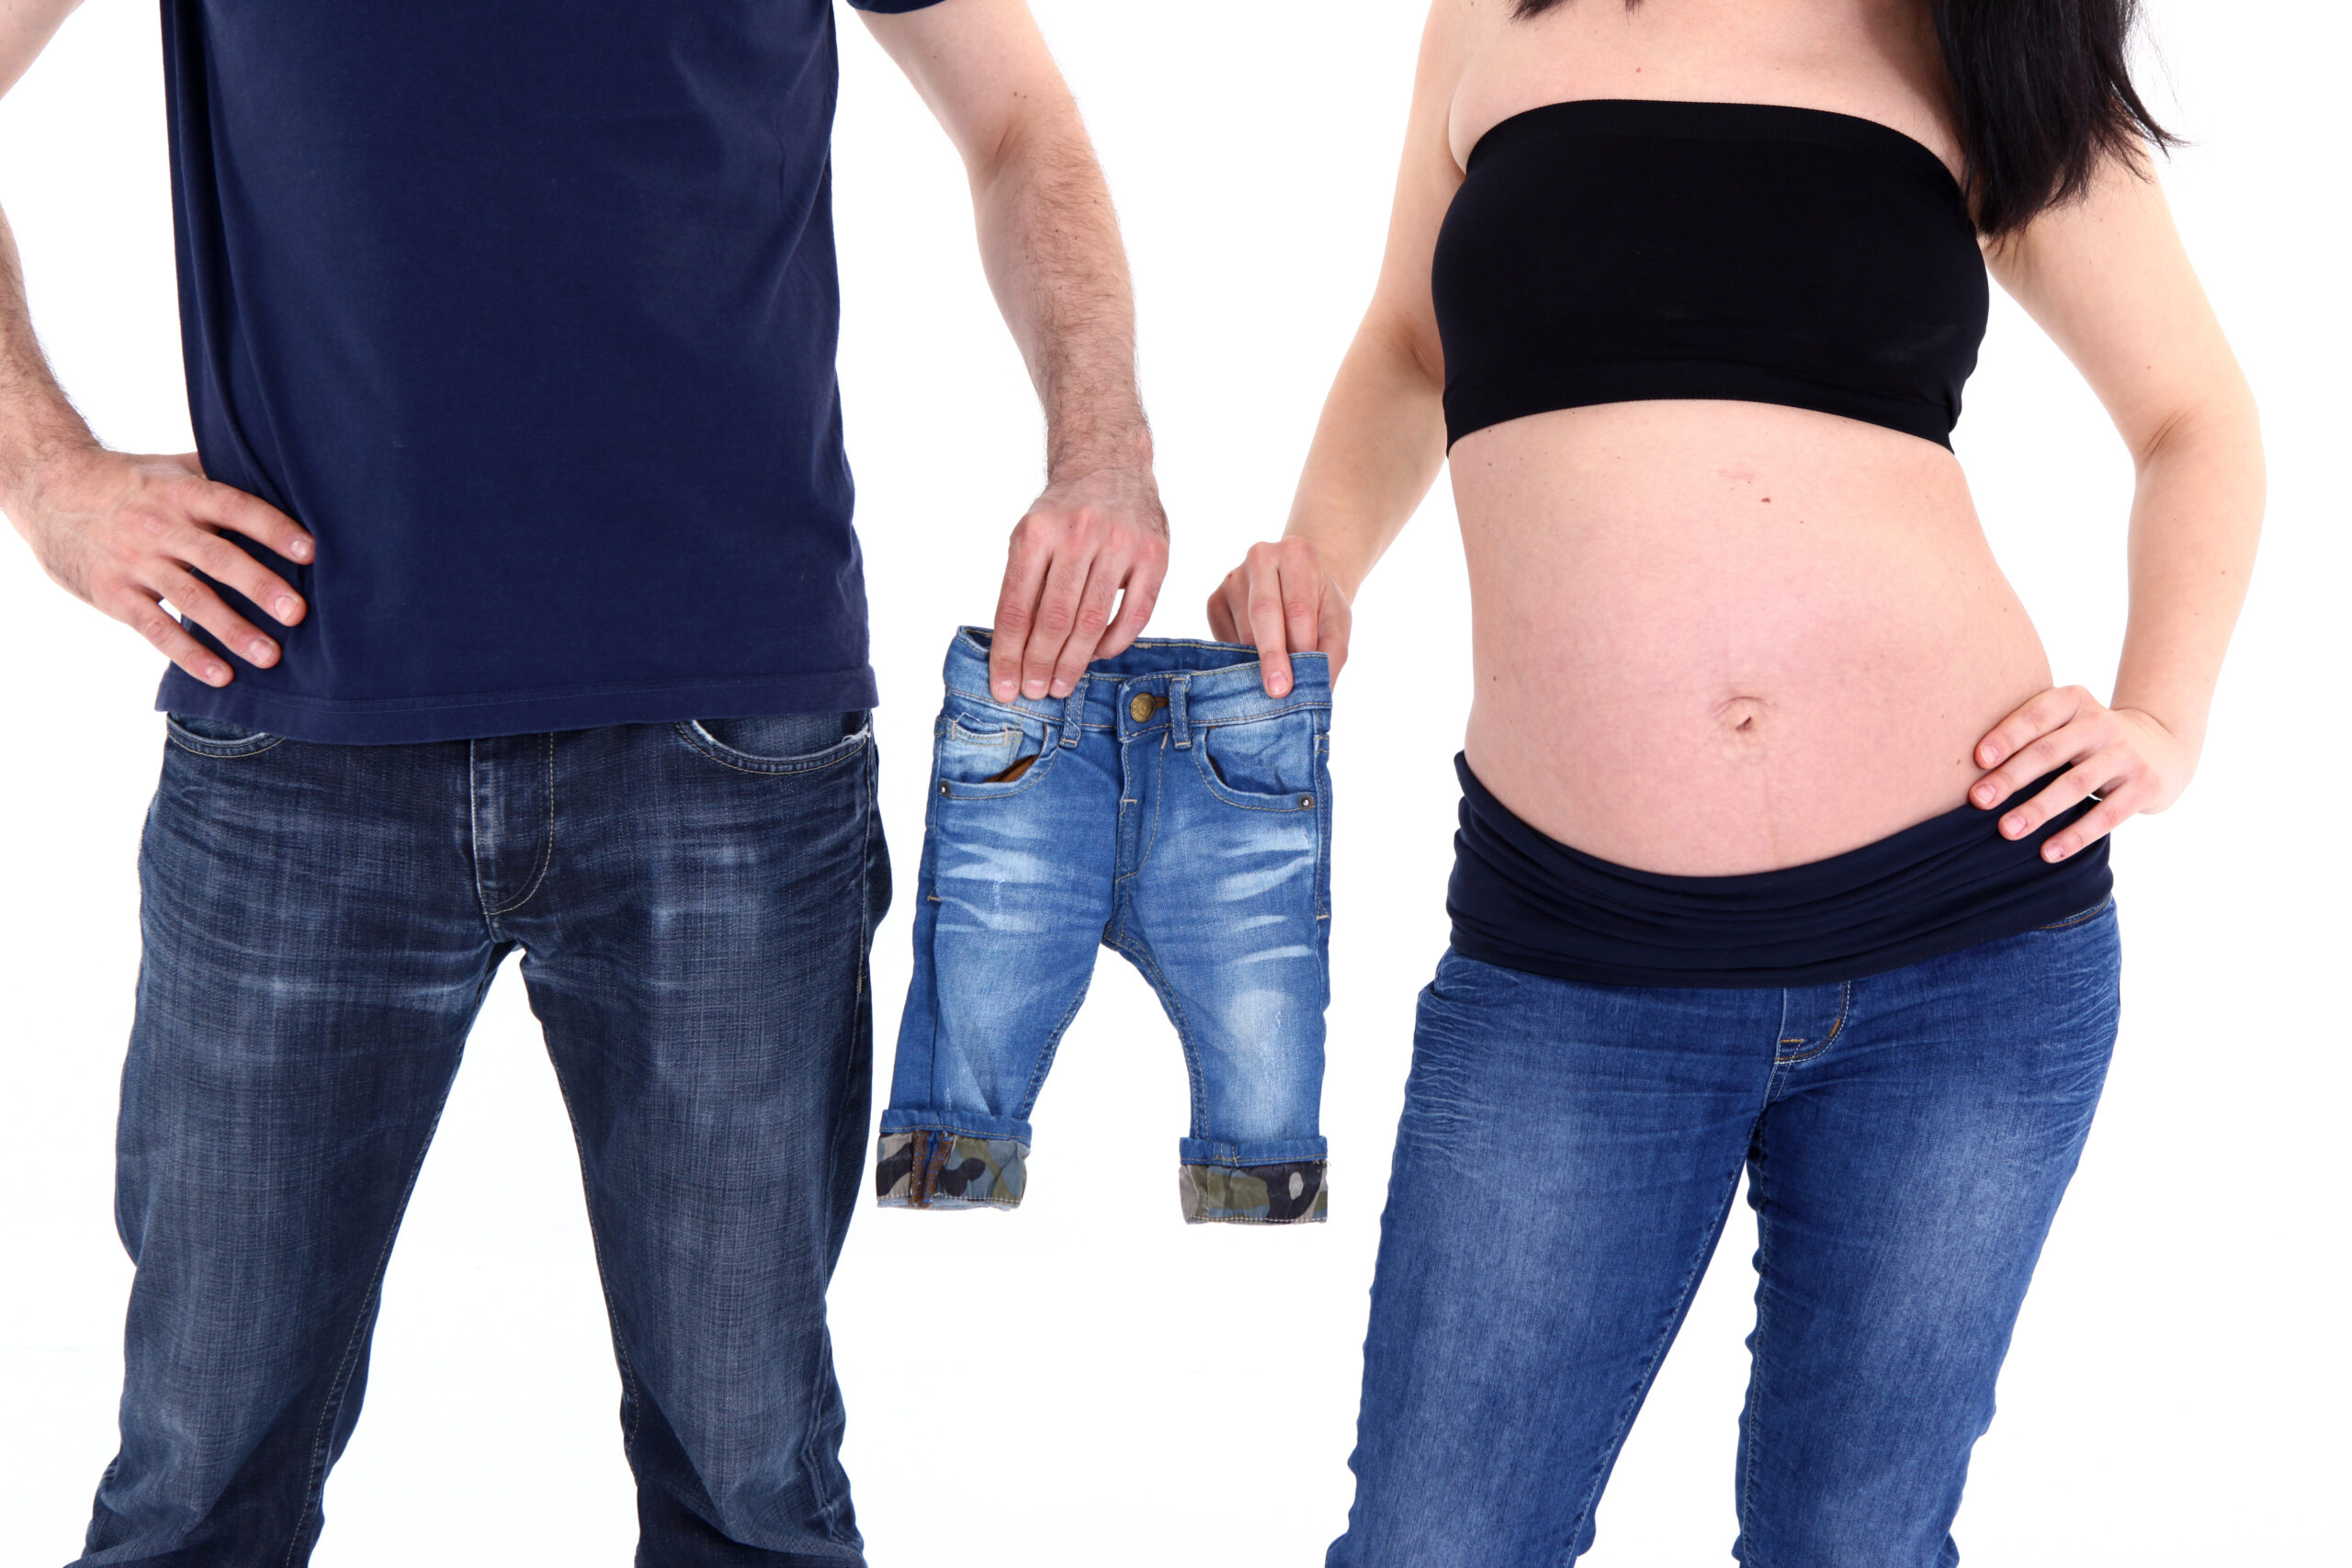 Ein Mann und eine schwangere Frau stehen nebeneinander, er hält eine kleine Jeanshose und sie umfasst ihren Babybauch.